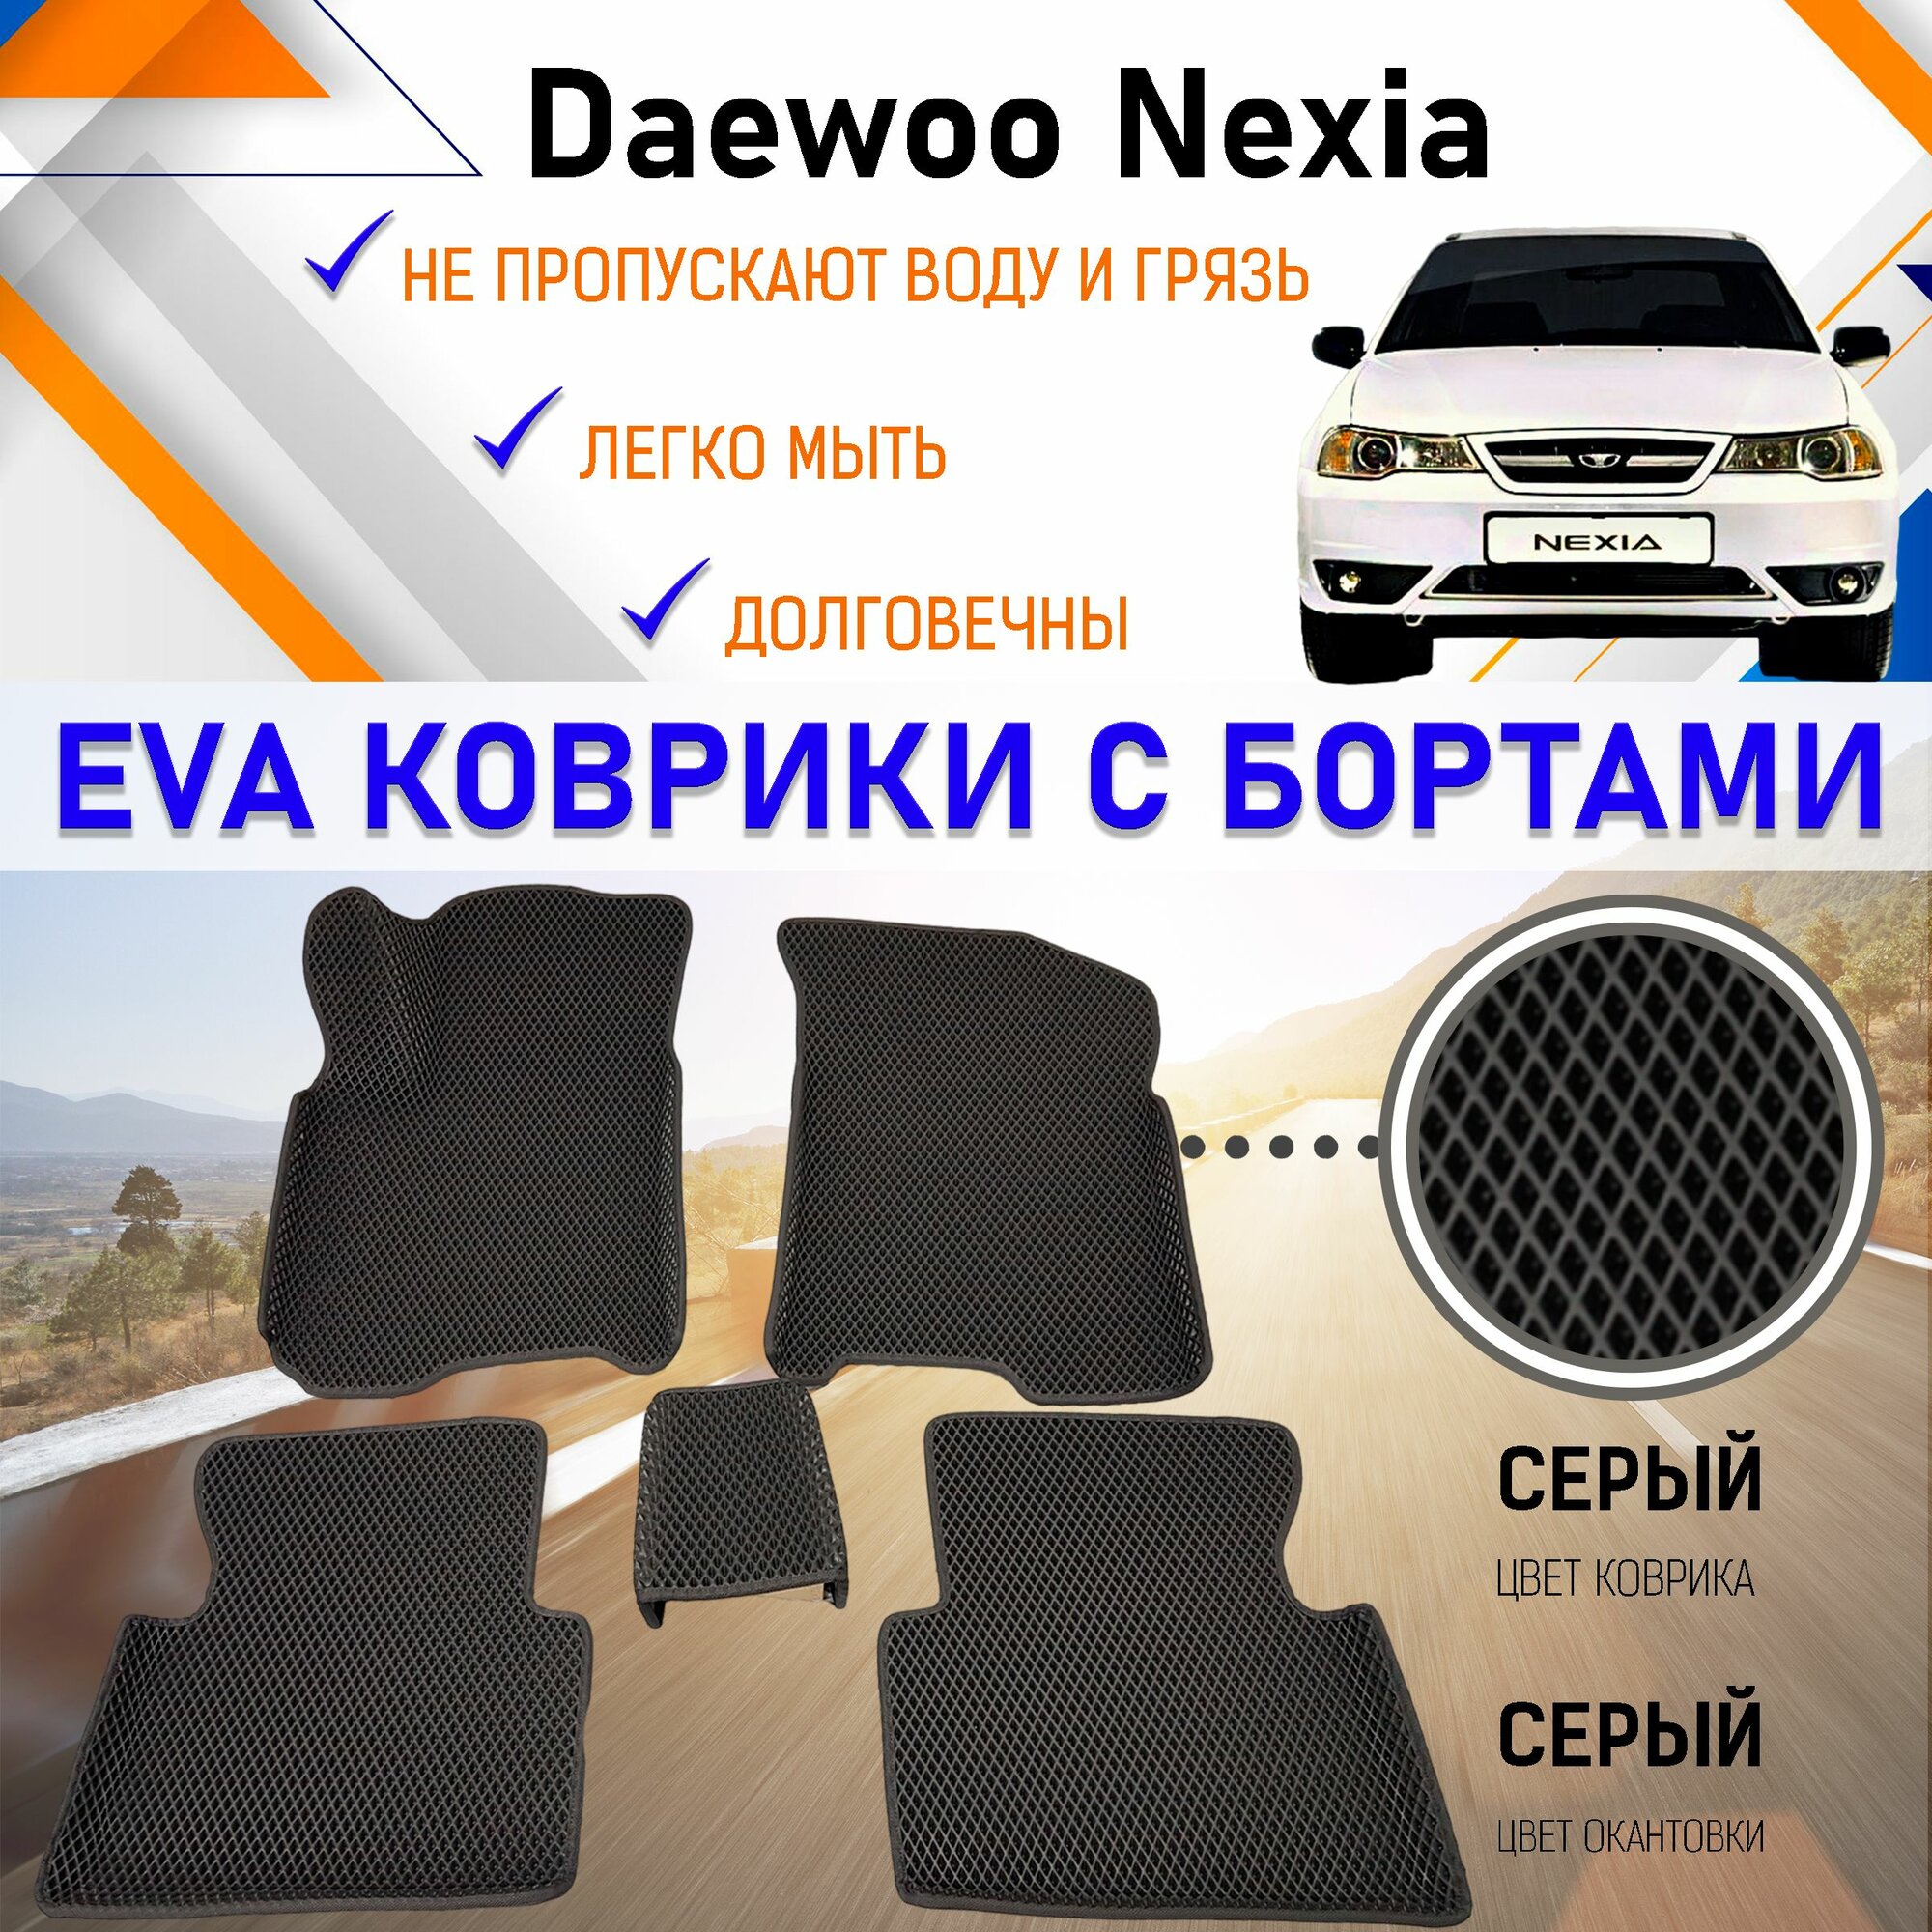 Автомобильные коврики ЕVA, EVO, ЭВО, ЭВА, ЕВА, ЕВО с бортами в салон машины Daewoo Nexia Дэу Нексия, резиновый настил для защиты салона авто от грязи и воды